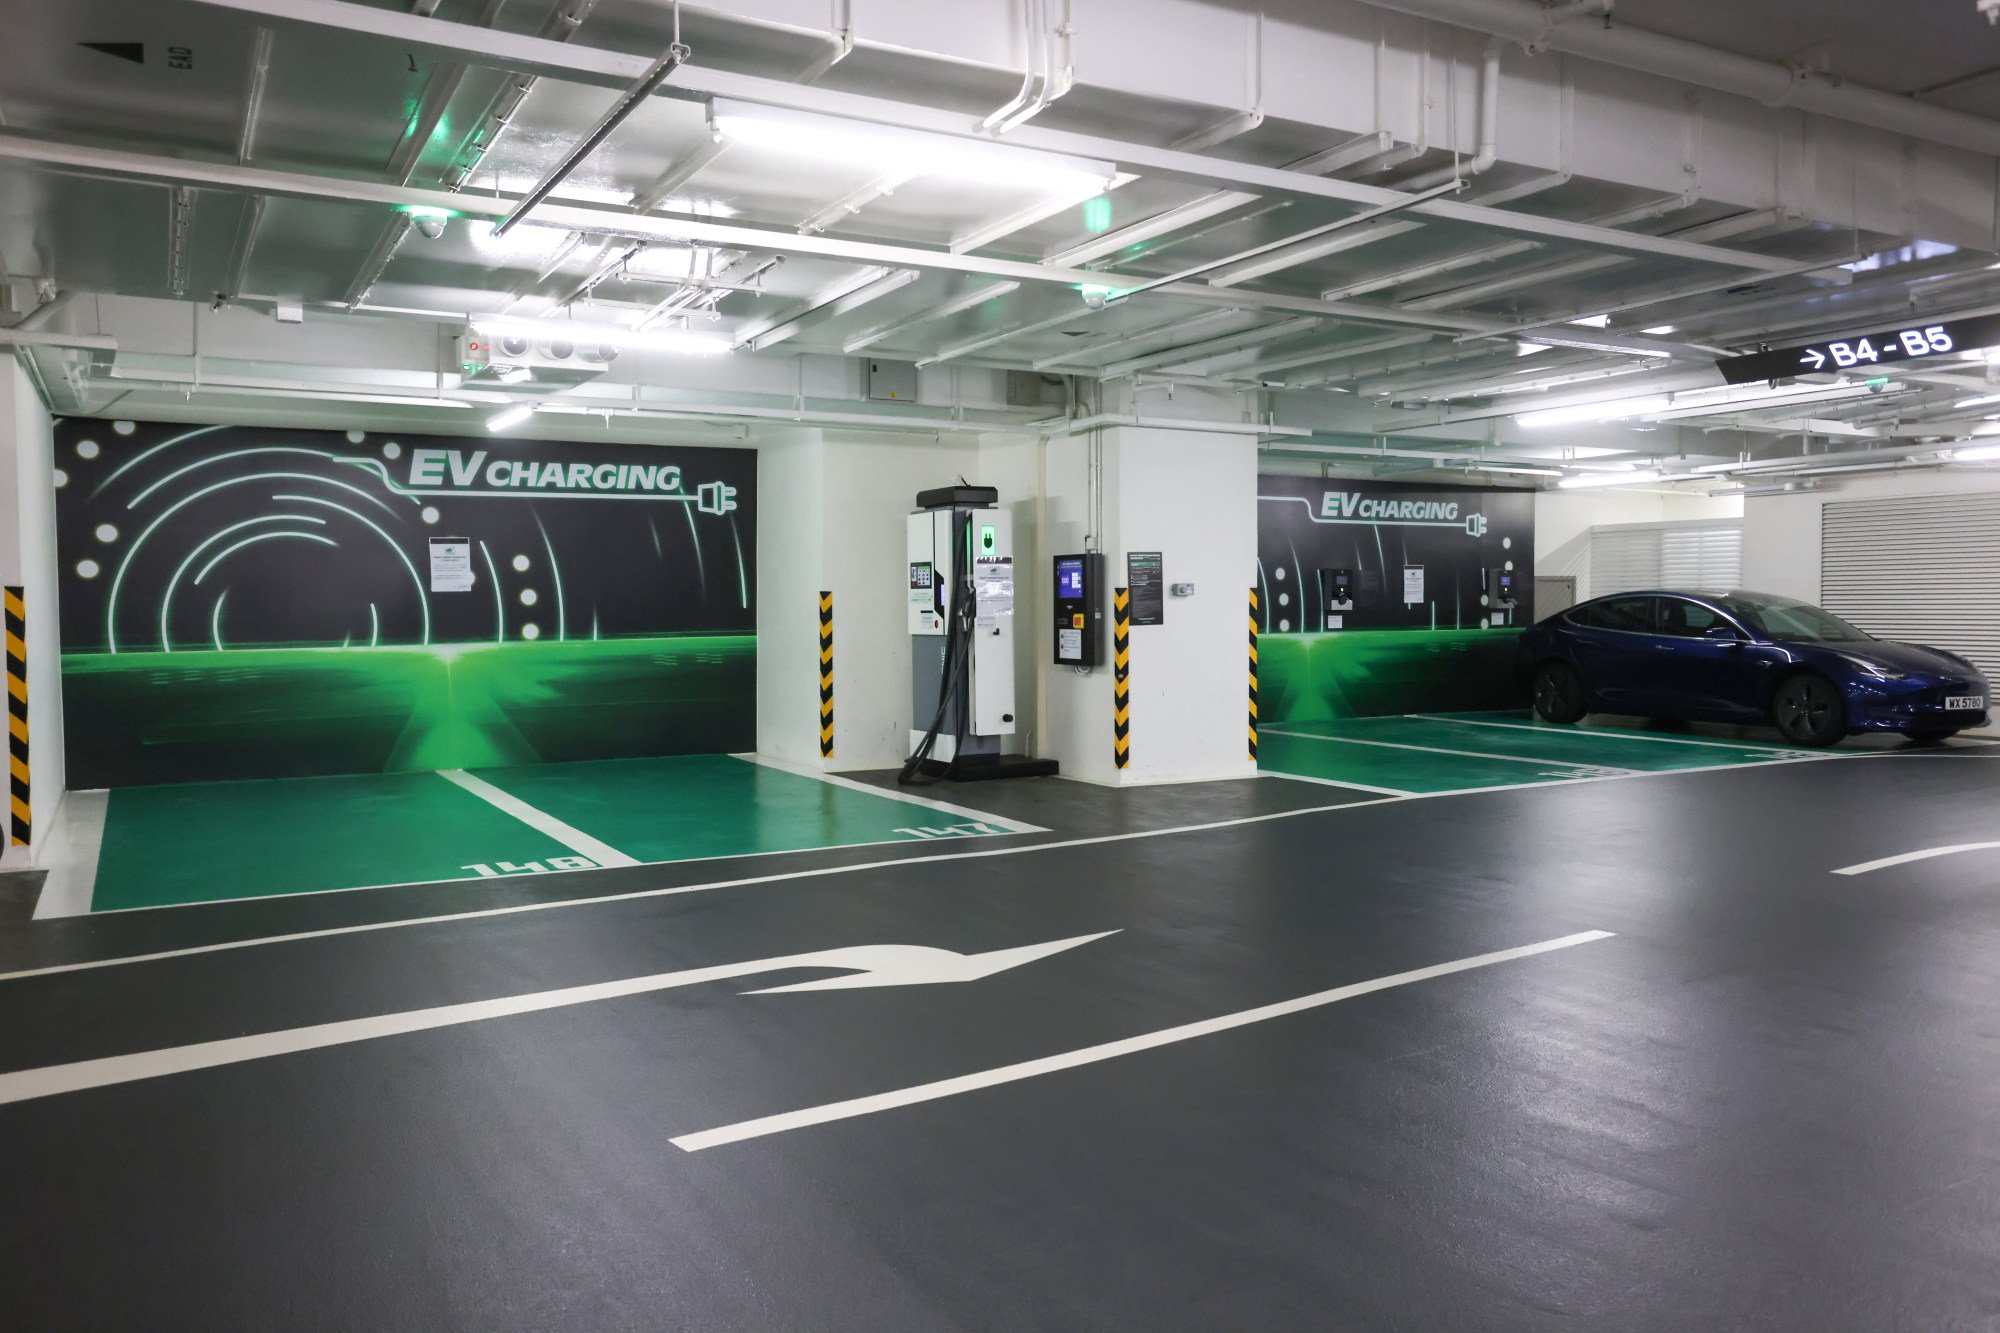 Hong Kong aims to install 7,000 electric vehicle charging stations at